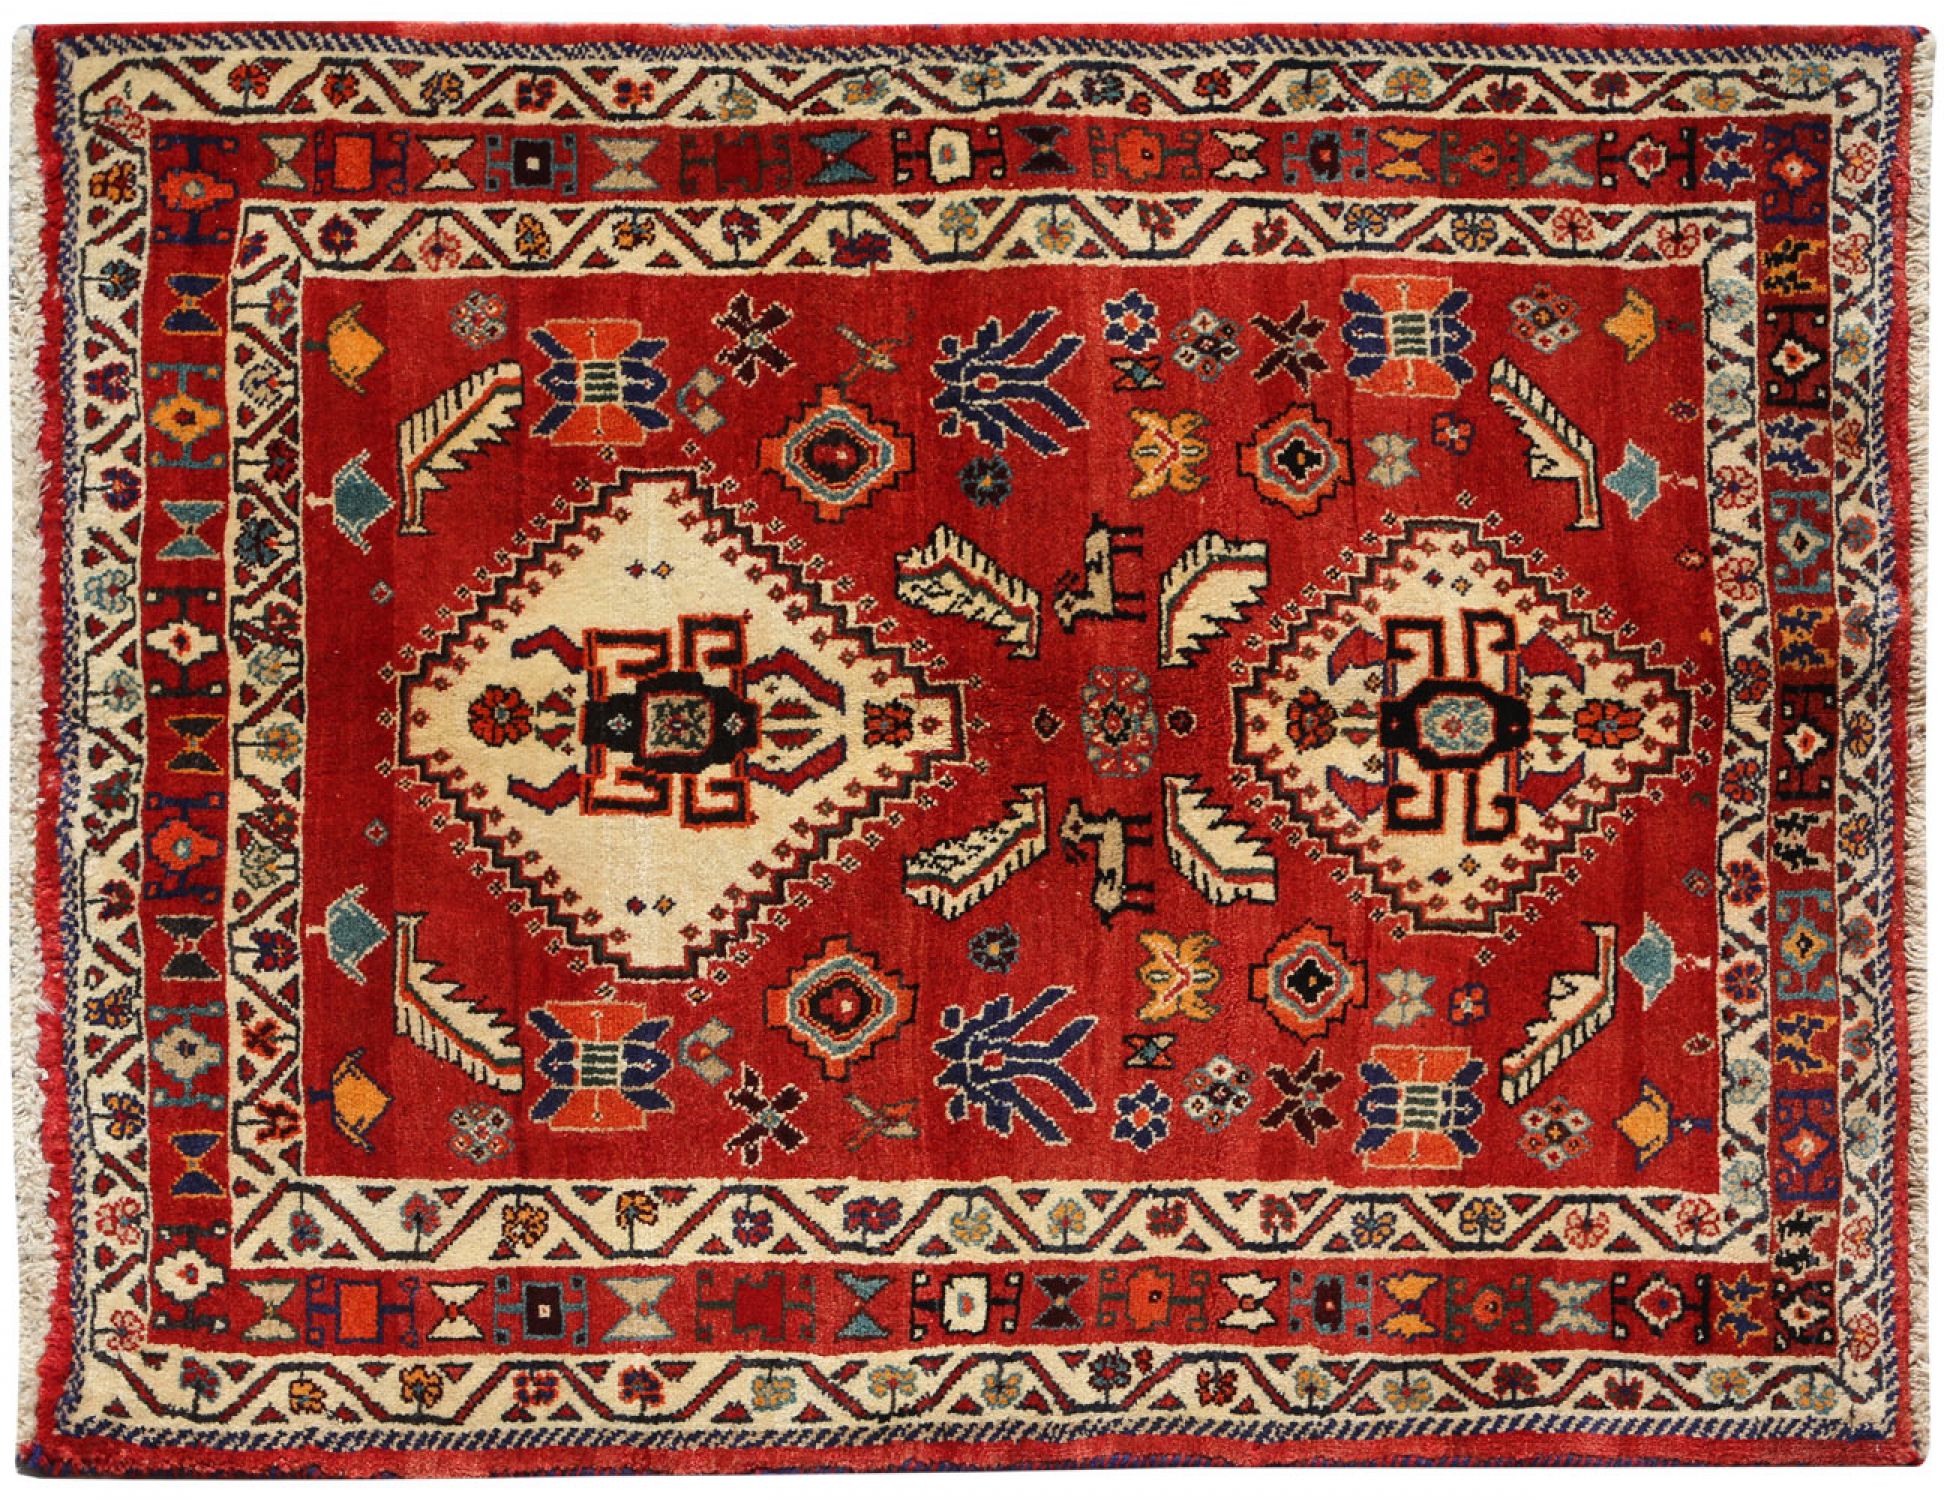  Περσικό Χαλί  Κόκκινο <br/>168 x 124 cm